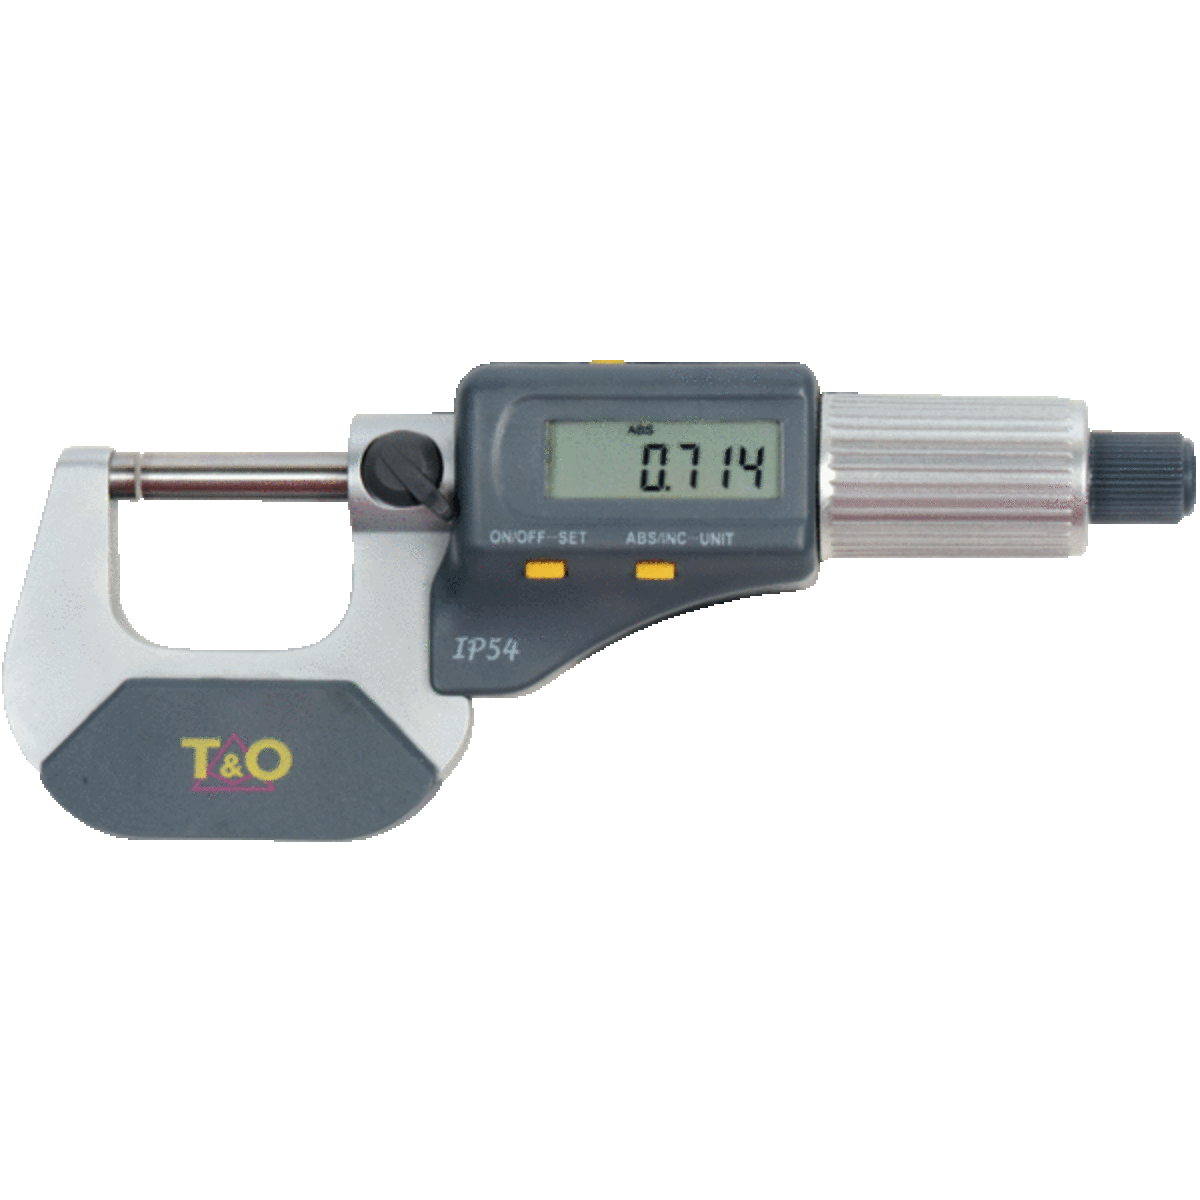 Micromètre d'extérieur à lecture digitale IP54 0-25 mm avec sortie de données T&O